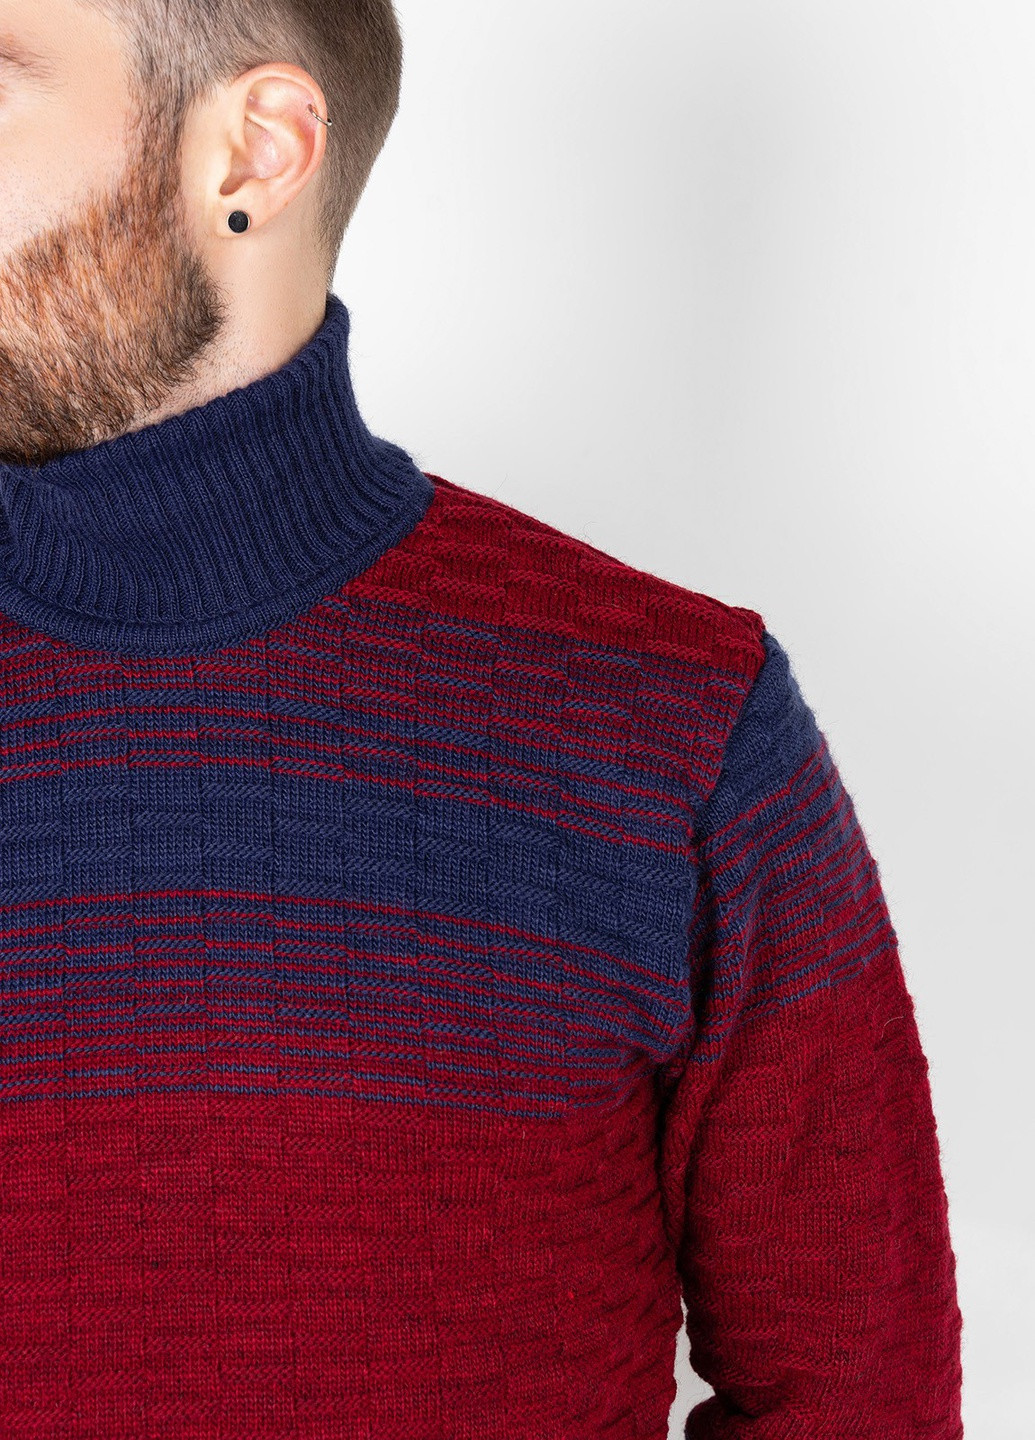 Бордовый демисезонный свитер мужской джемпер ISSA PLUS GN4-72